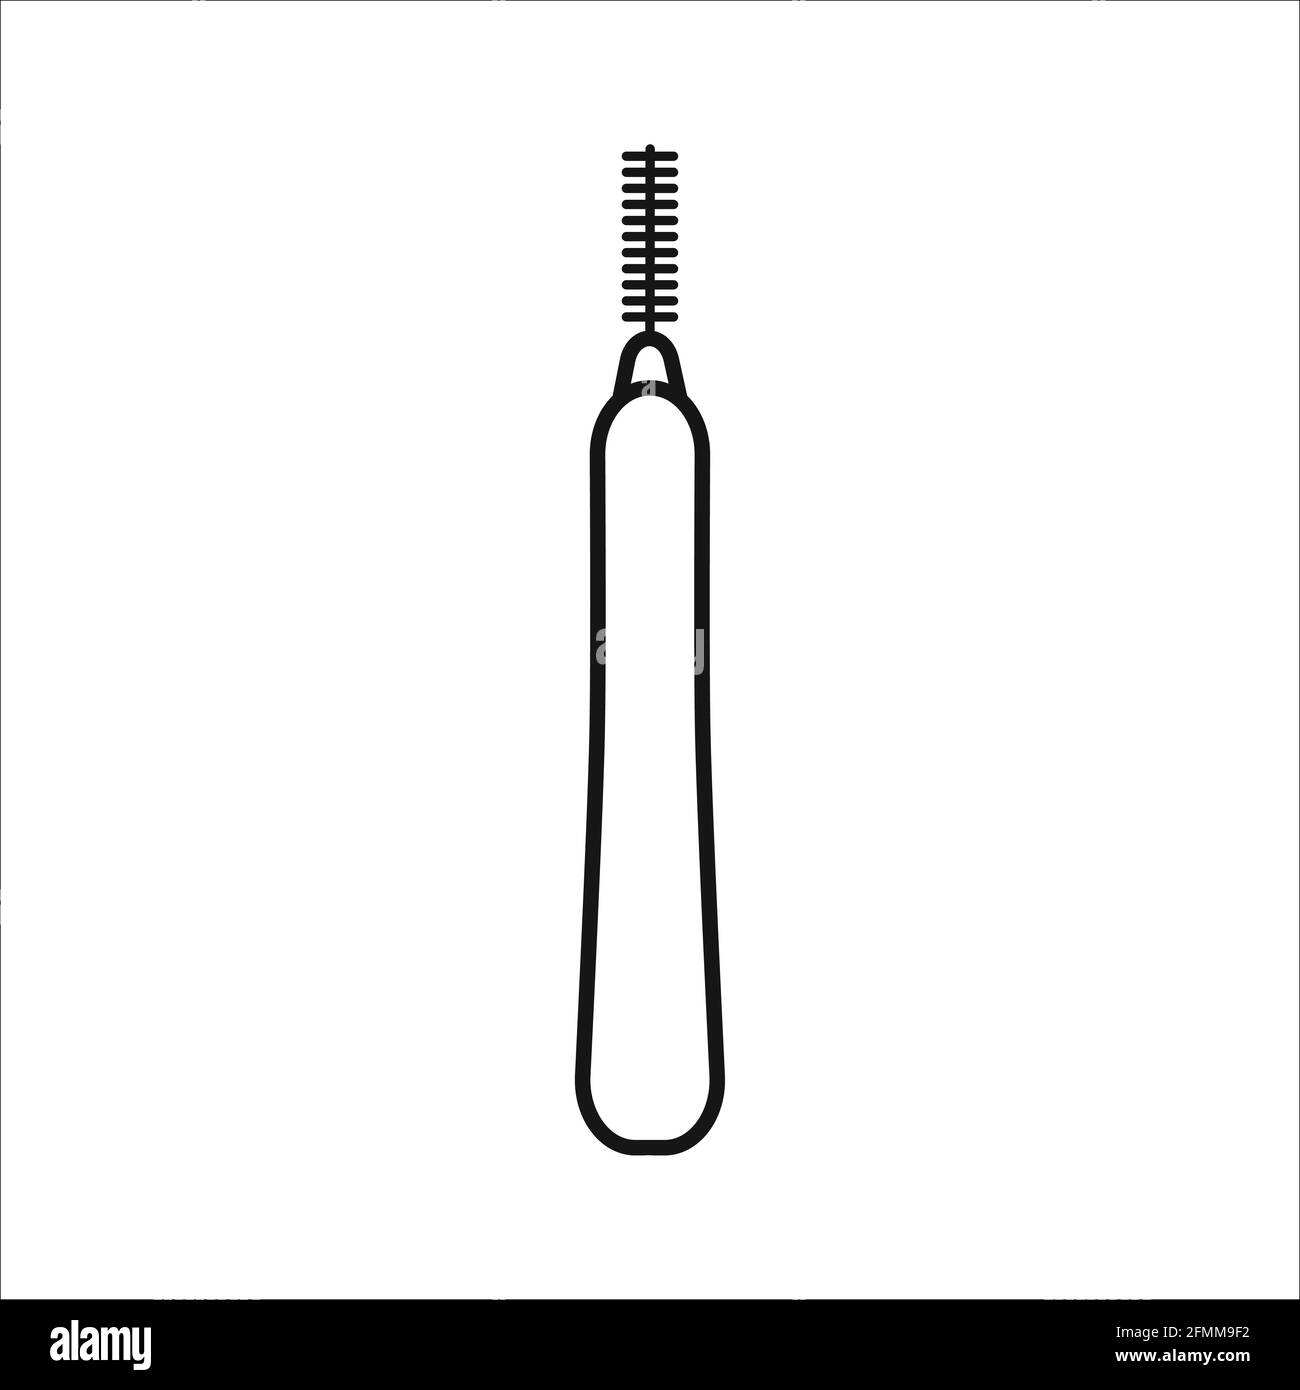 Interdentalbürste Vektor Umriss Zeichen. Pipe-Cleaner Dentalprodukt einzelnes Symbol auf weißem Hintergrund isoliert. Persönliche Mundhygiene nach Hause im Badezimmer. Stock Vektor